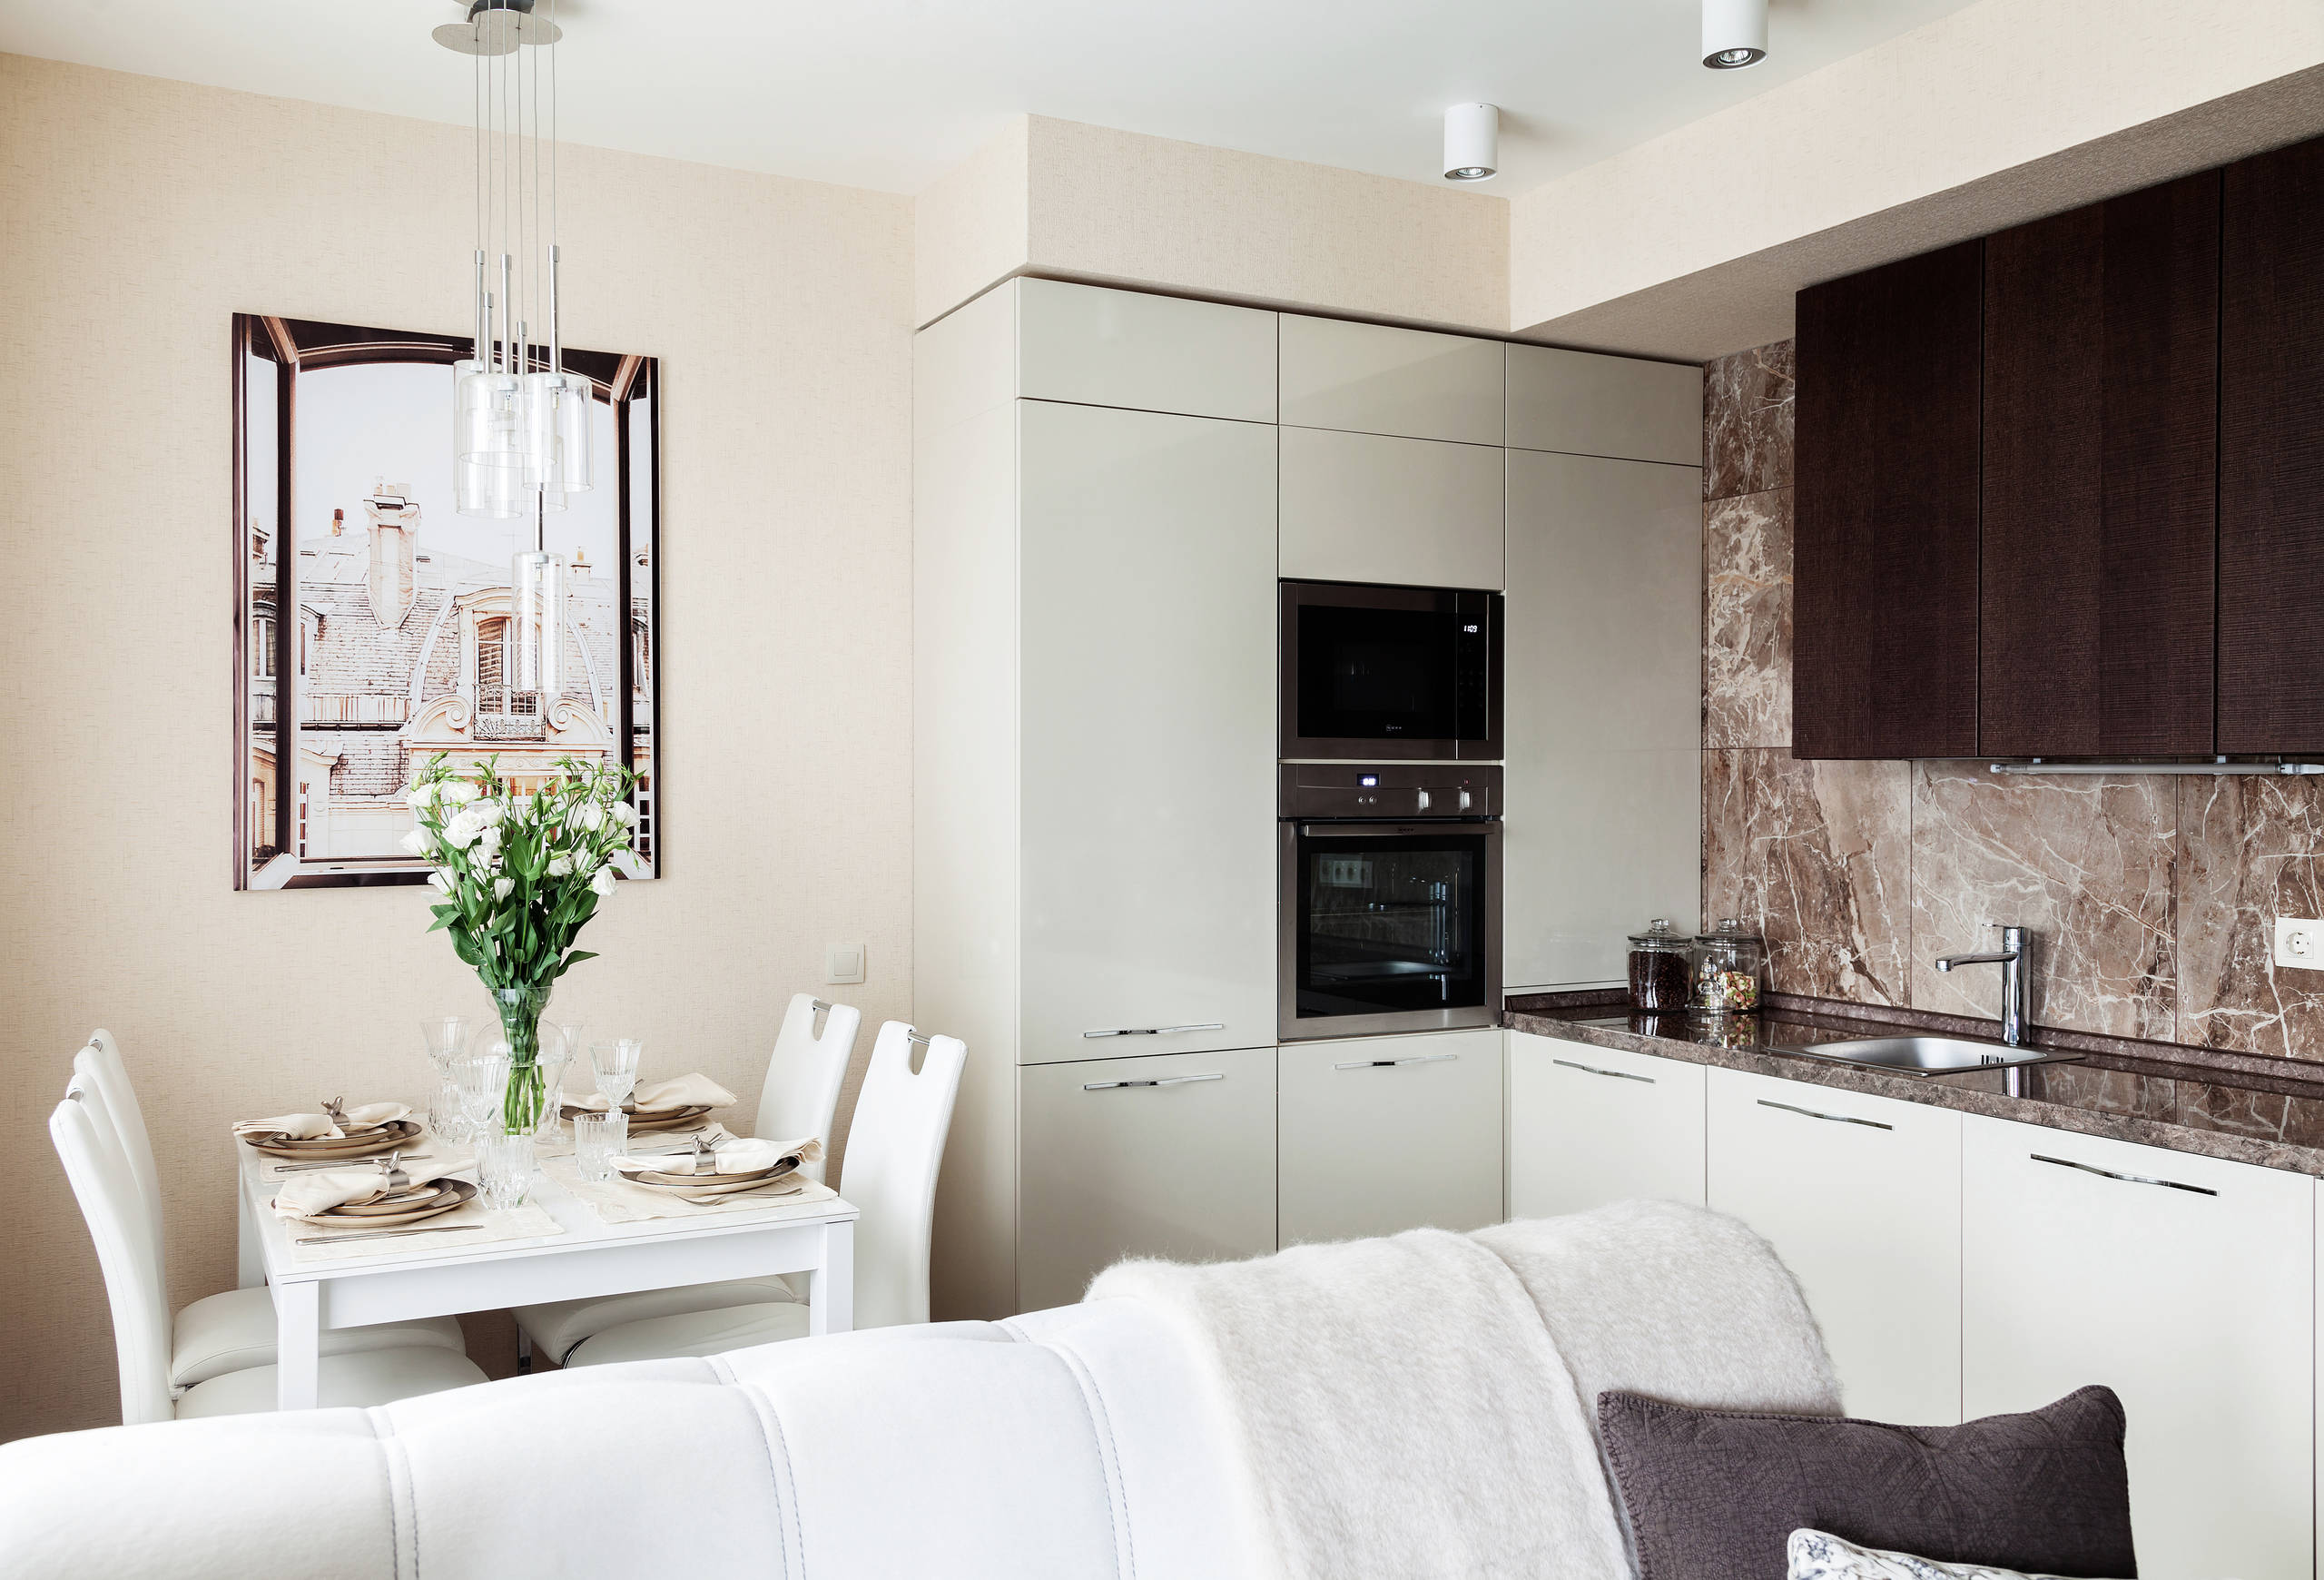 Кухня-гостиная в маленькой квартире: 30+ идей от российских дизайнеров